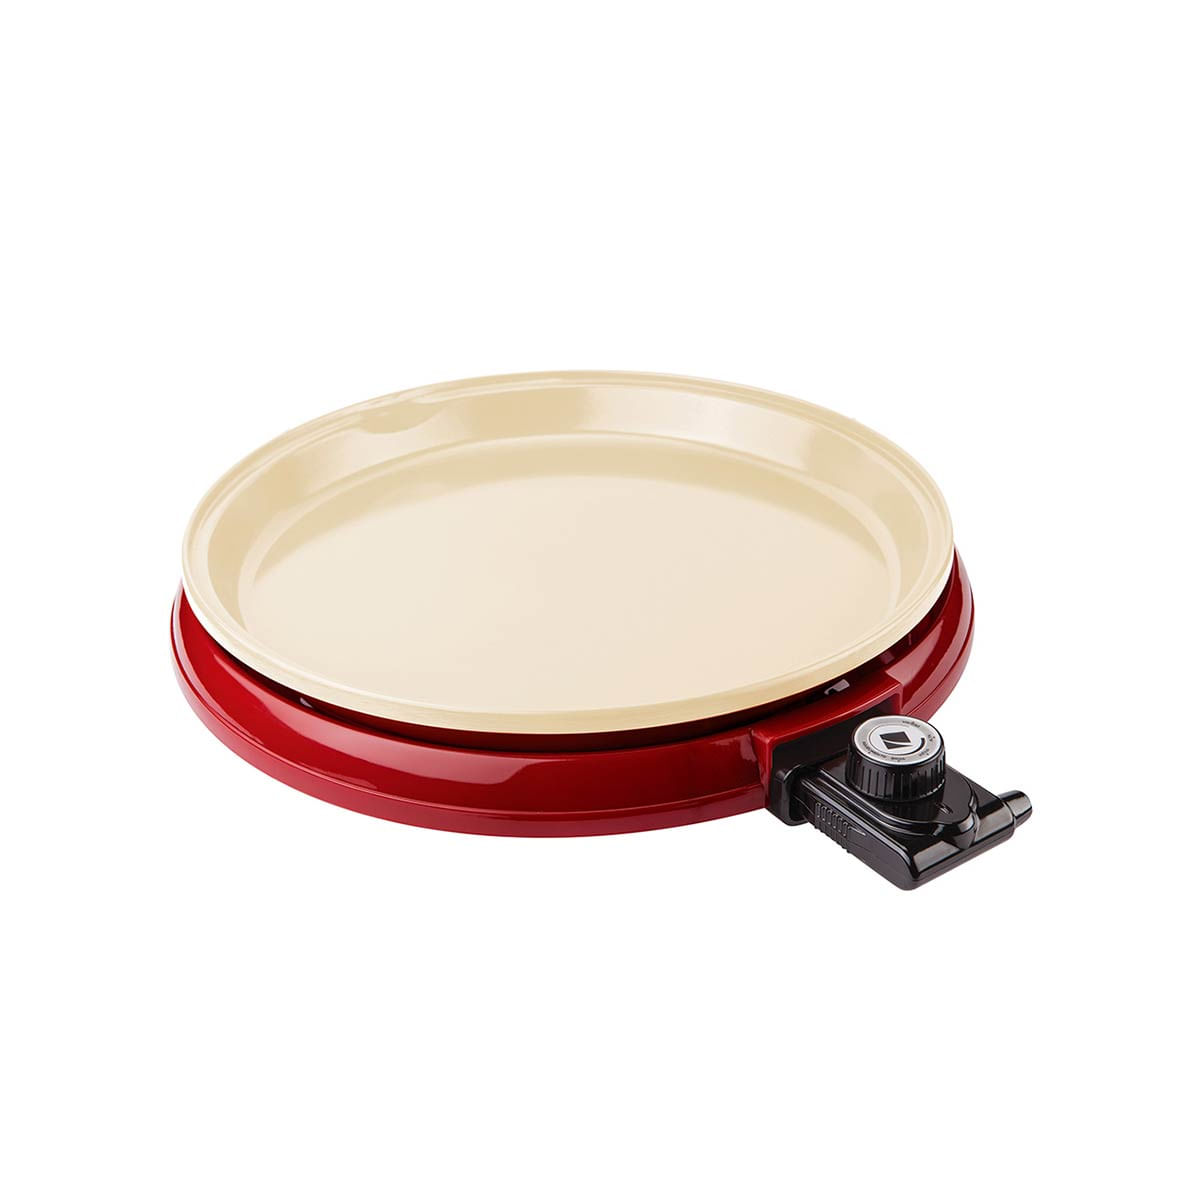 grill-cadence-ceramic-pan-grl350-1200w-vermelho-110v-1.jpg